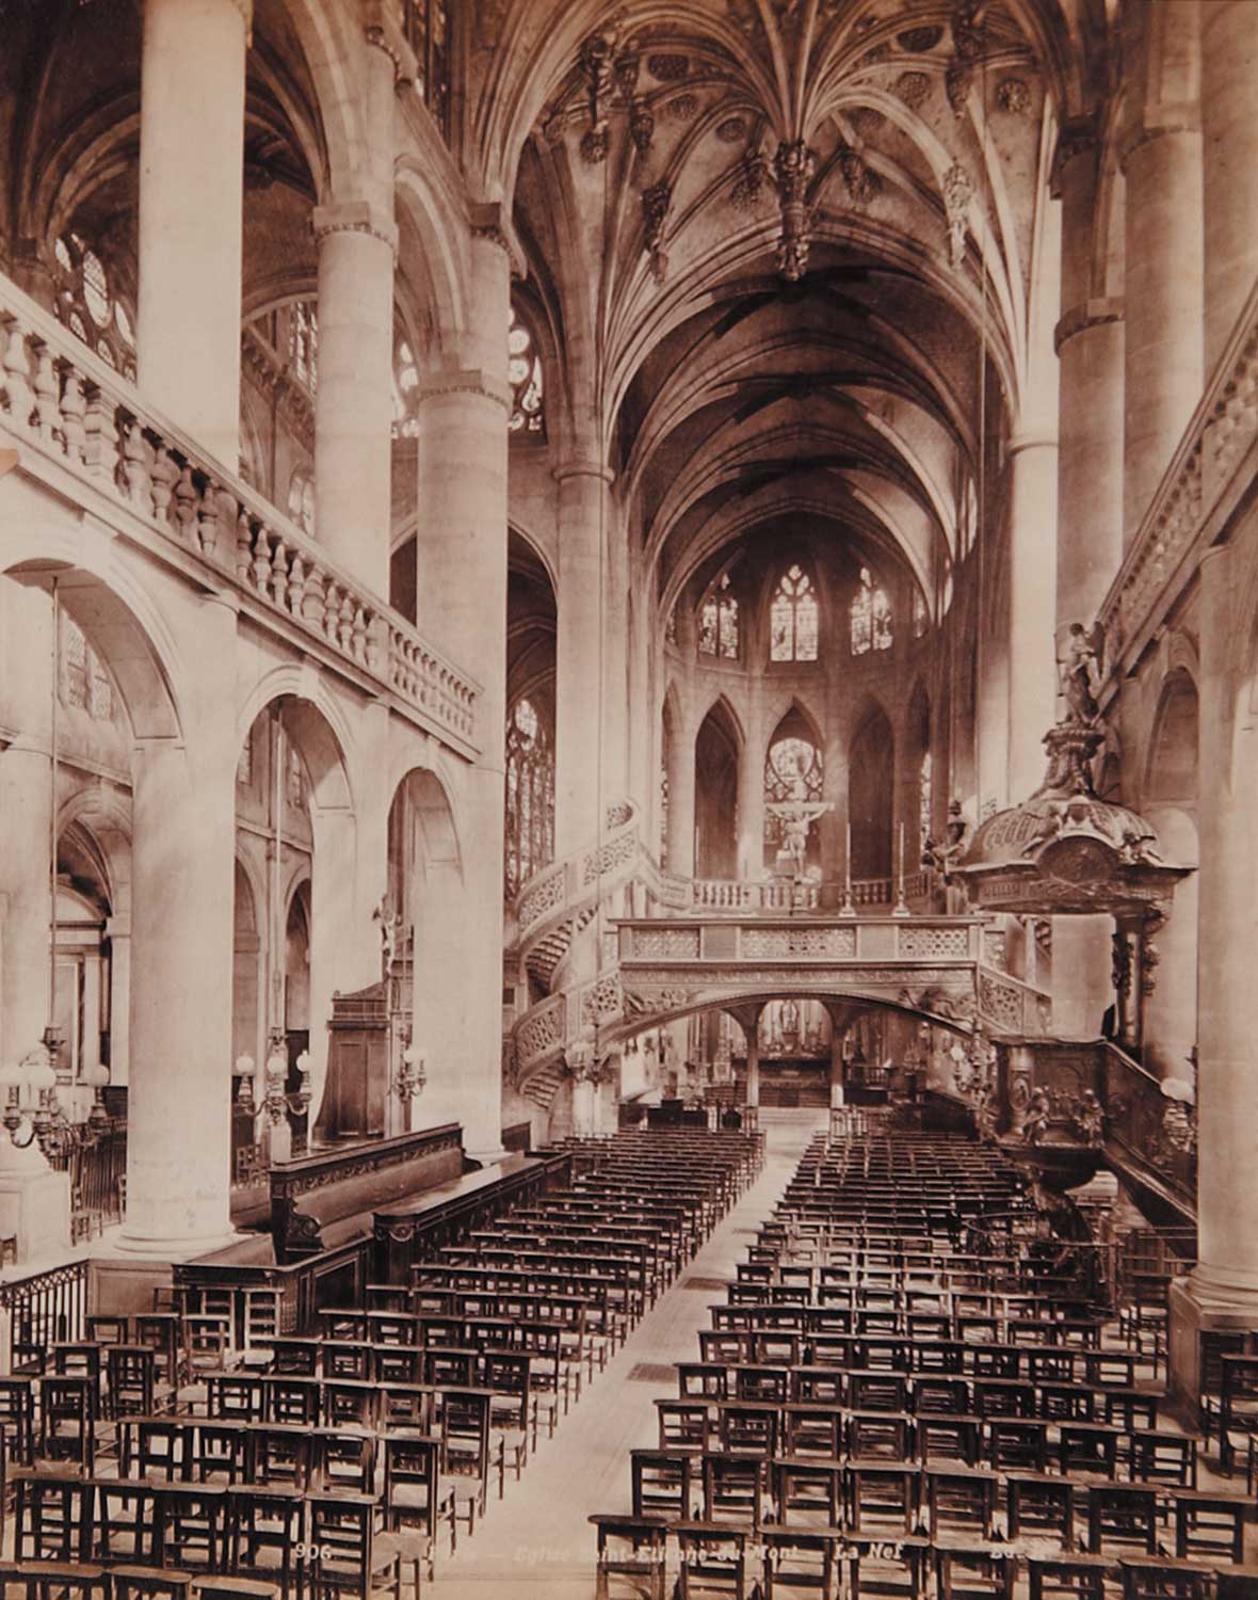 French School - La Nef (the nave), Eglise Saint Etienne - du - Mont, Paris